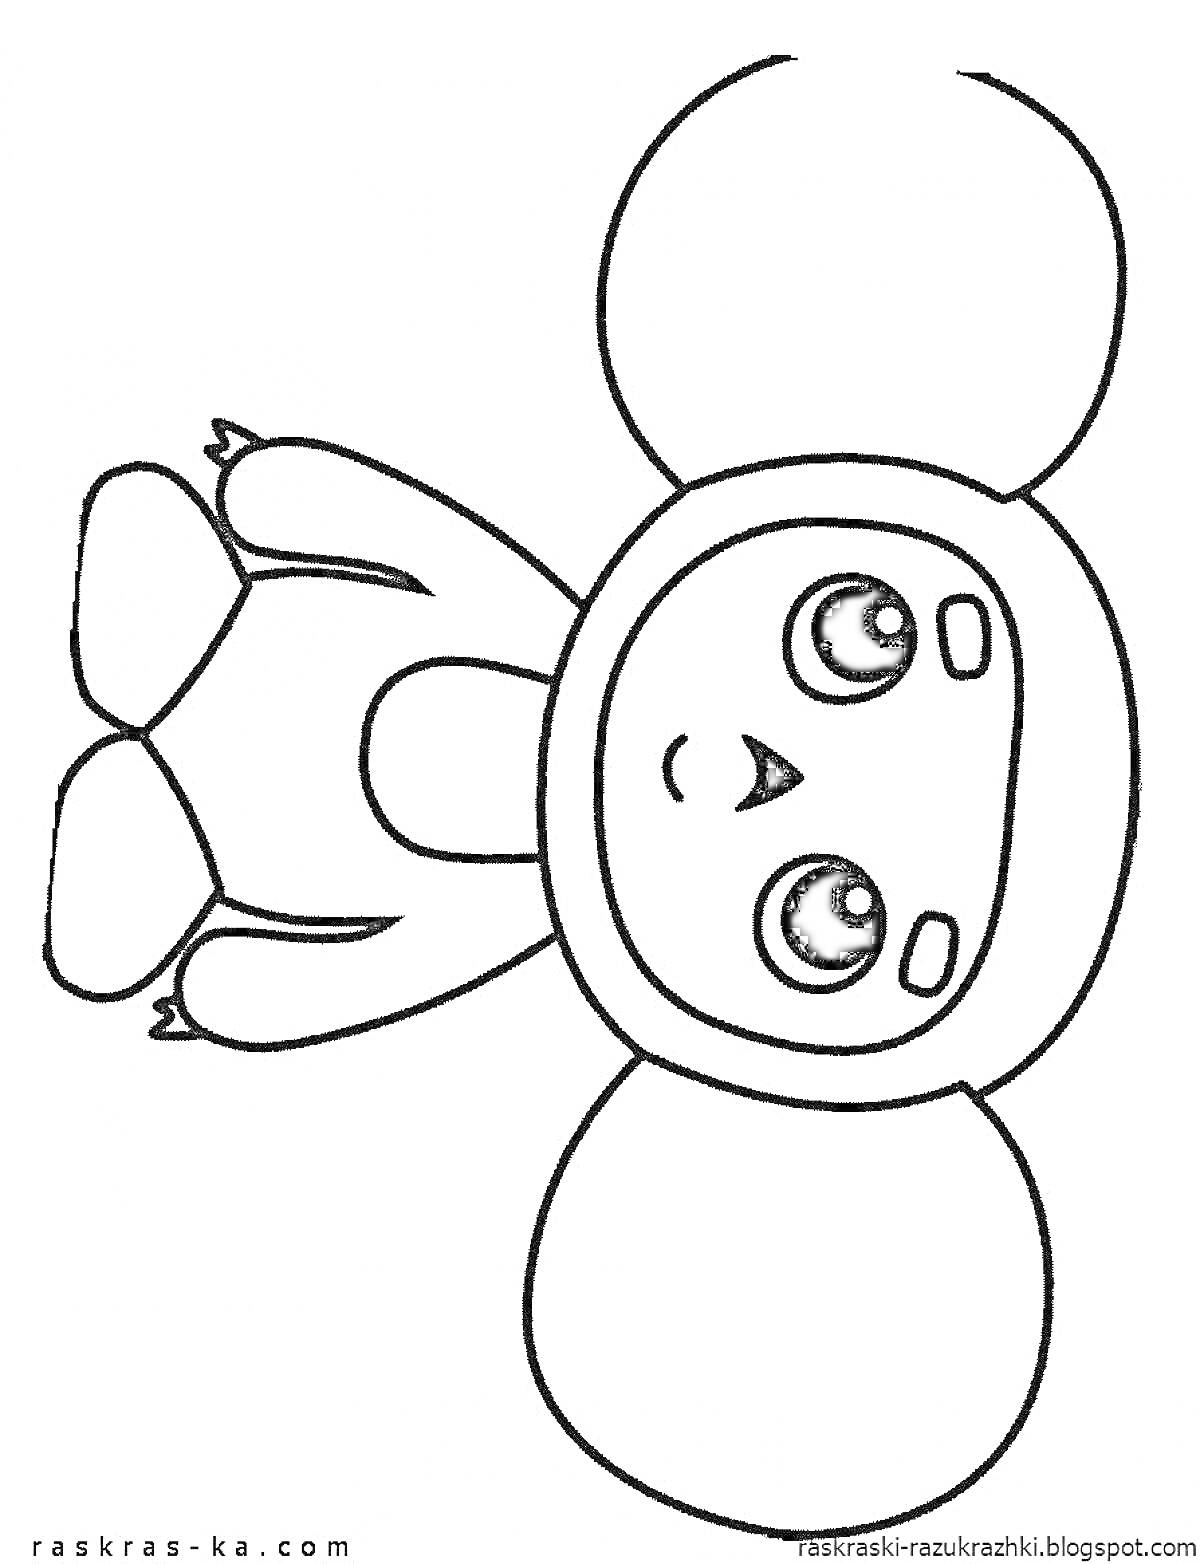 Раскраска Чебурашка с большими ушами и большими глазами